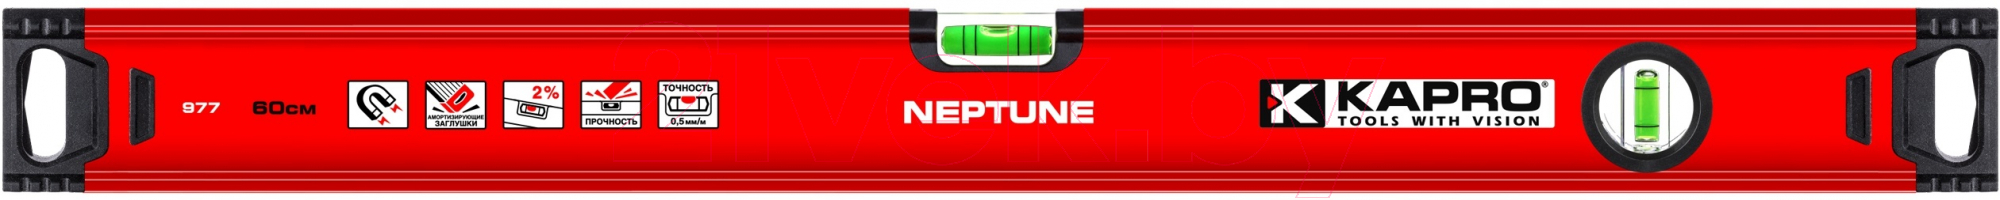 Уровень строительный Kapro Neptune 977-40-80М